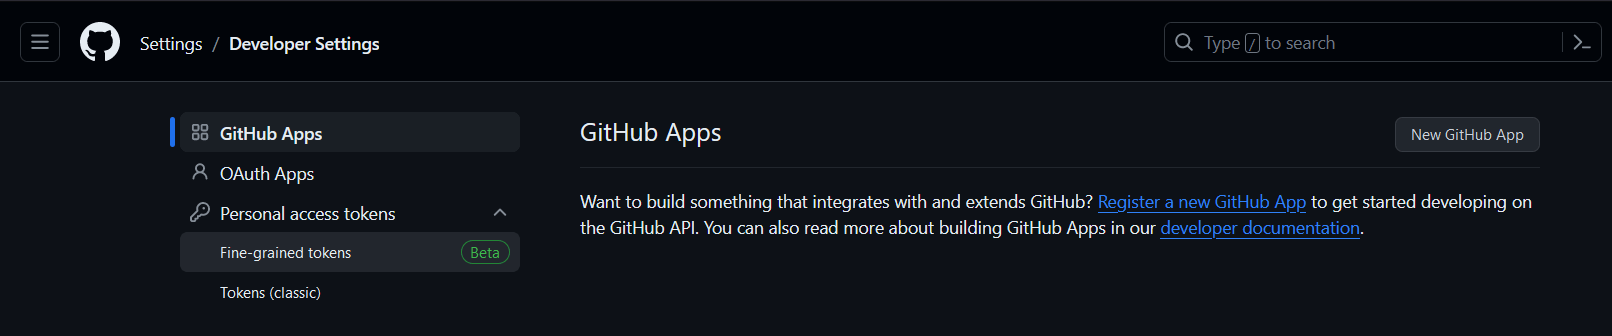 github developer setting